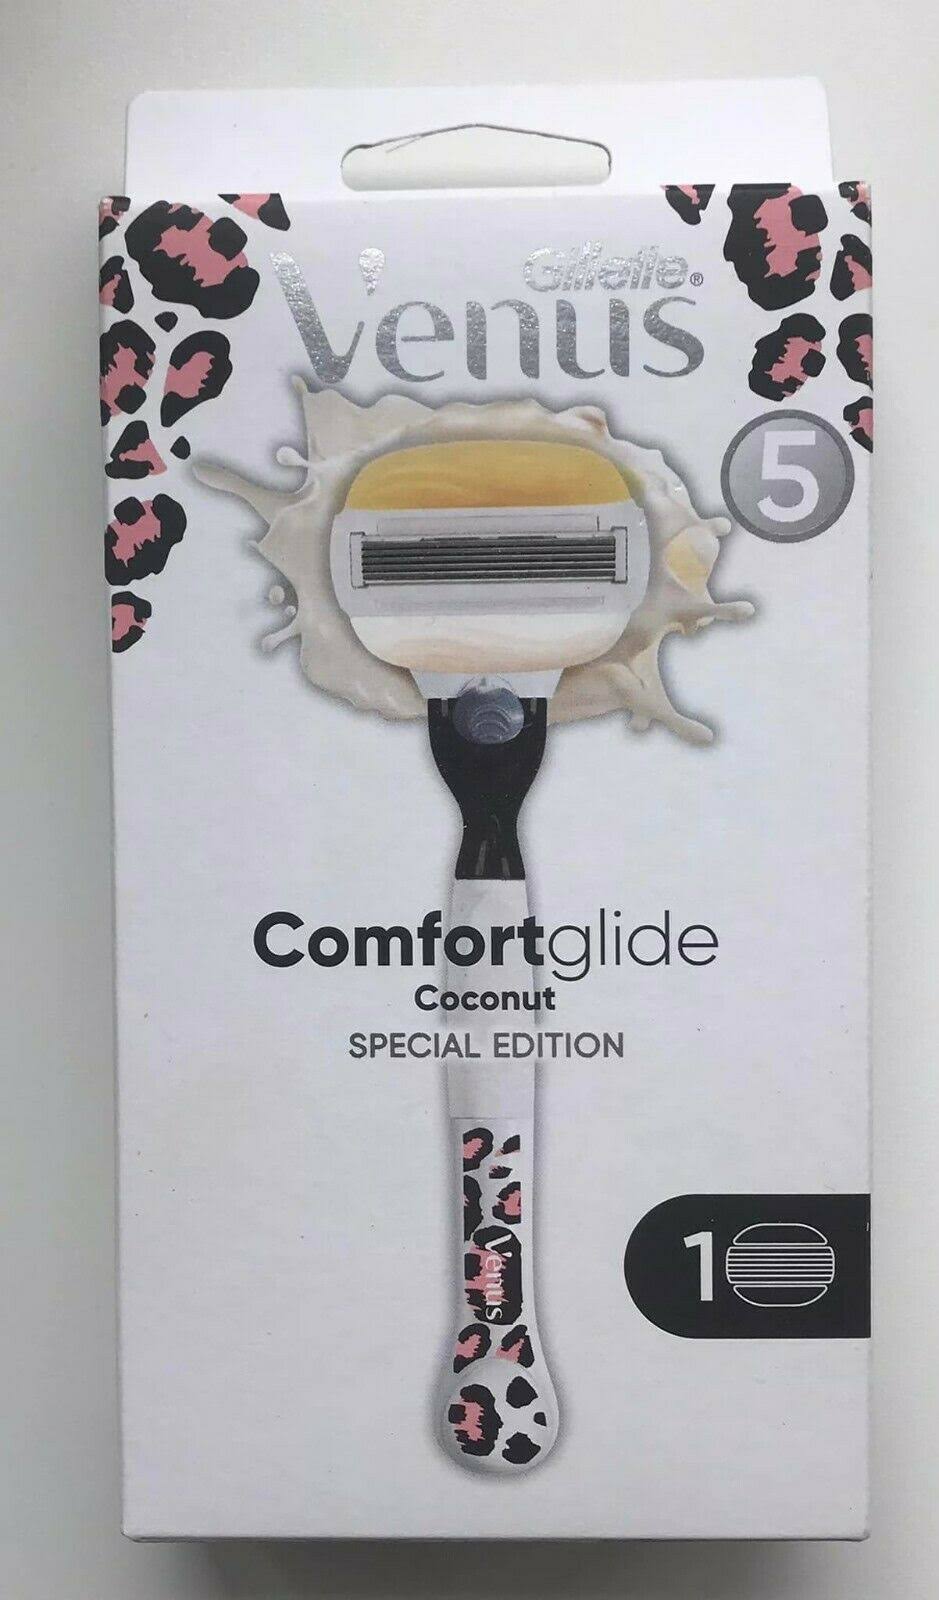 Venus Comfortglide Coconut Special Edition Razor - 1 Blade